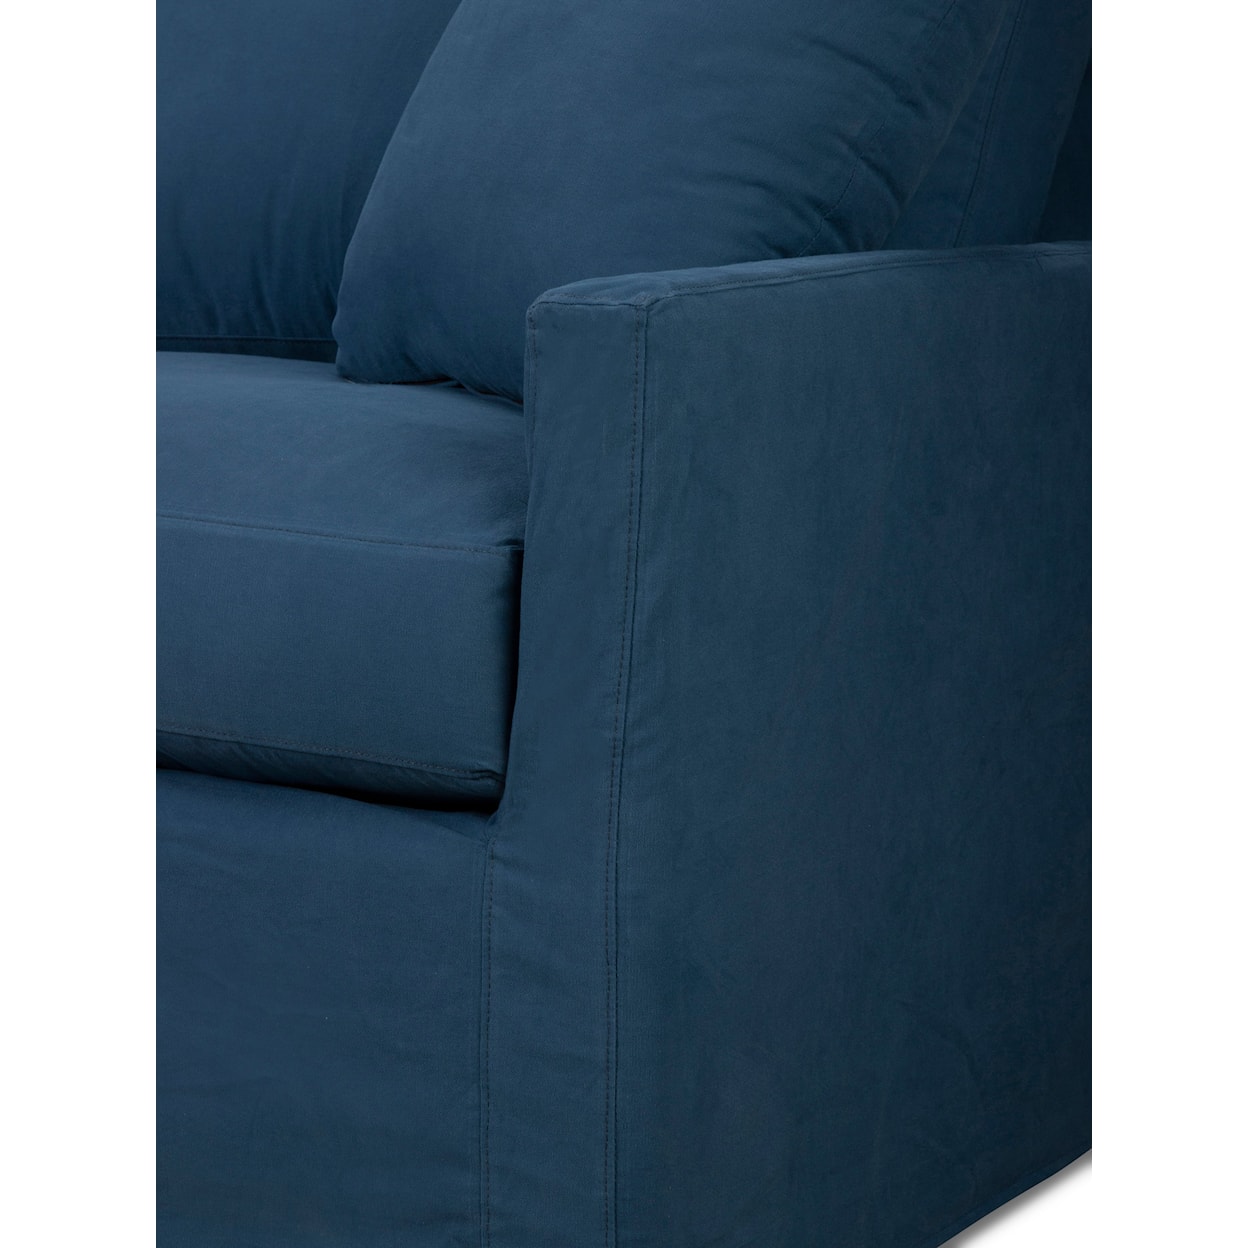 Stone & Leigh Furniture Savannah Slipcover Sofa